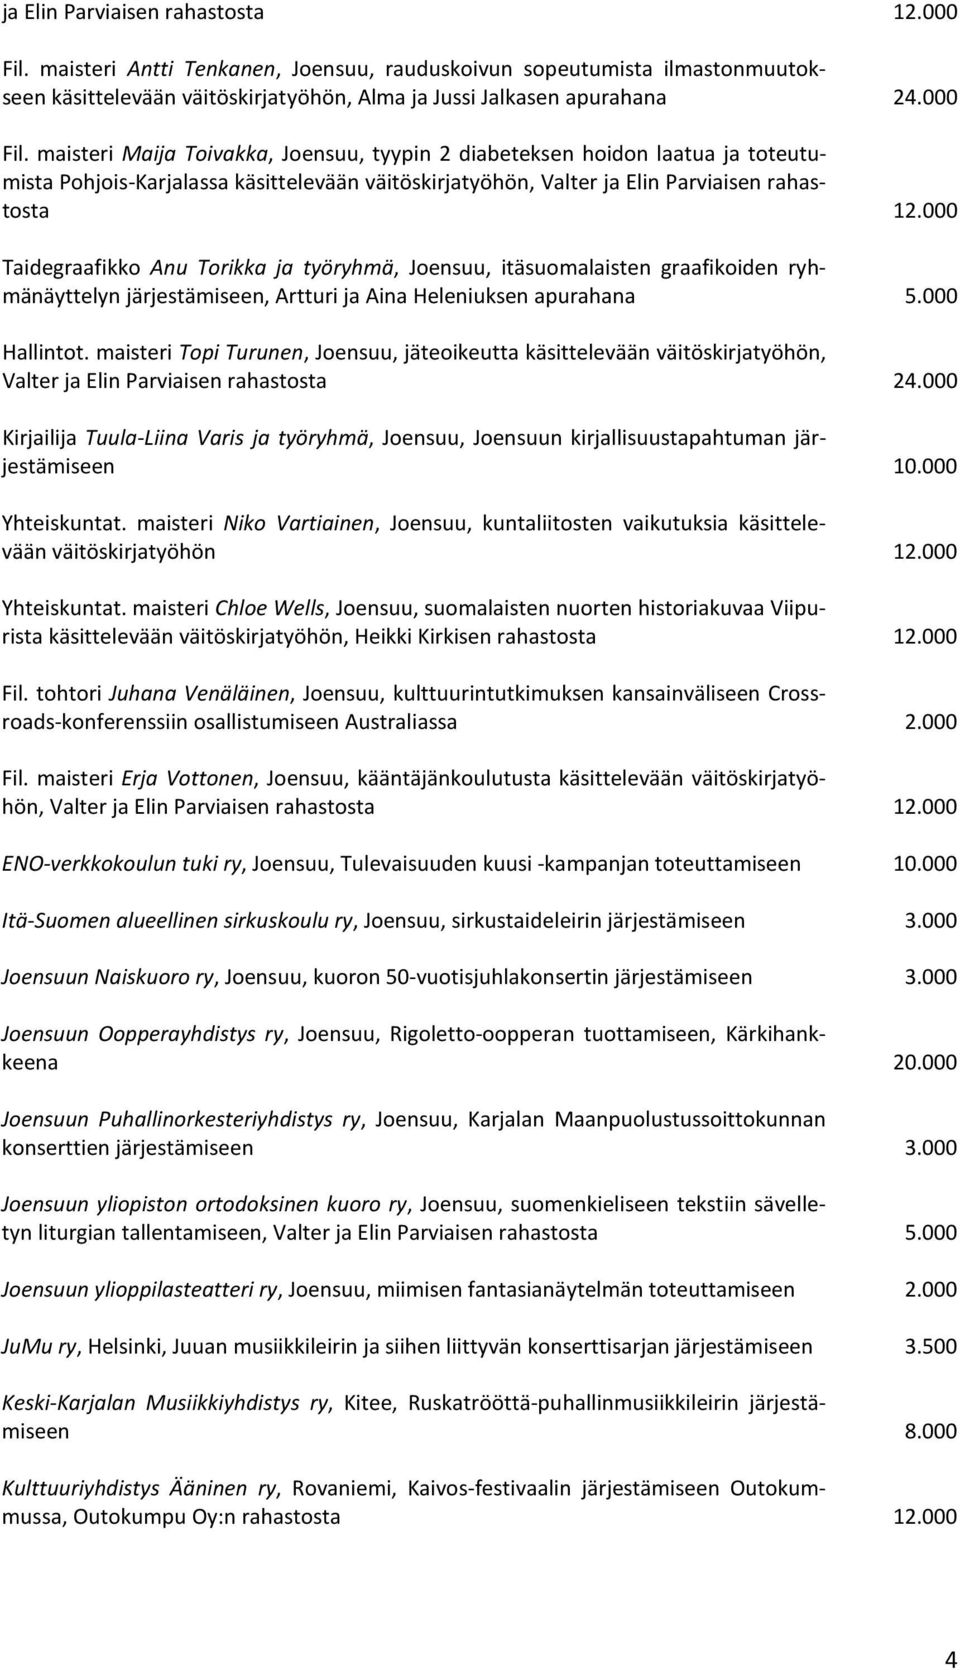 maisteri Maija Toivakka, Joensuu, tyypin 2 diabeteksen hoidon laatua ja toteutumista Pohjois-Karjalassa käsittelevään väitöskirjatyöhön, Valter ja Elin Parviaisen rahastosta 12.